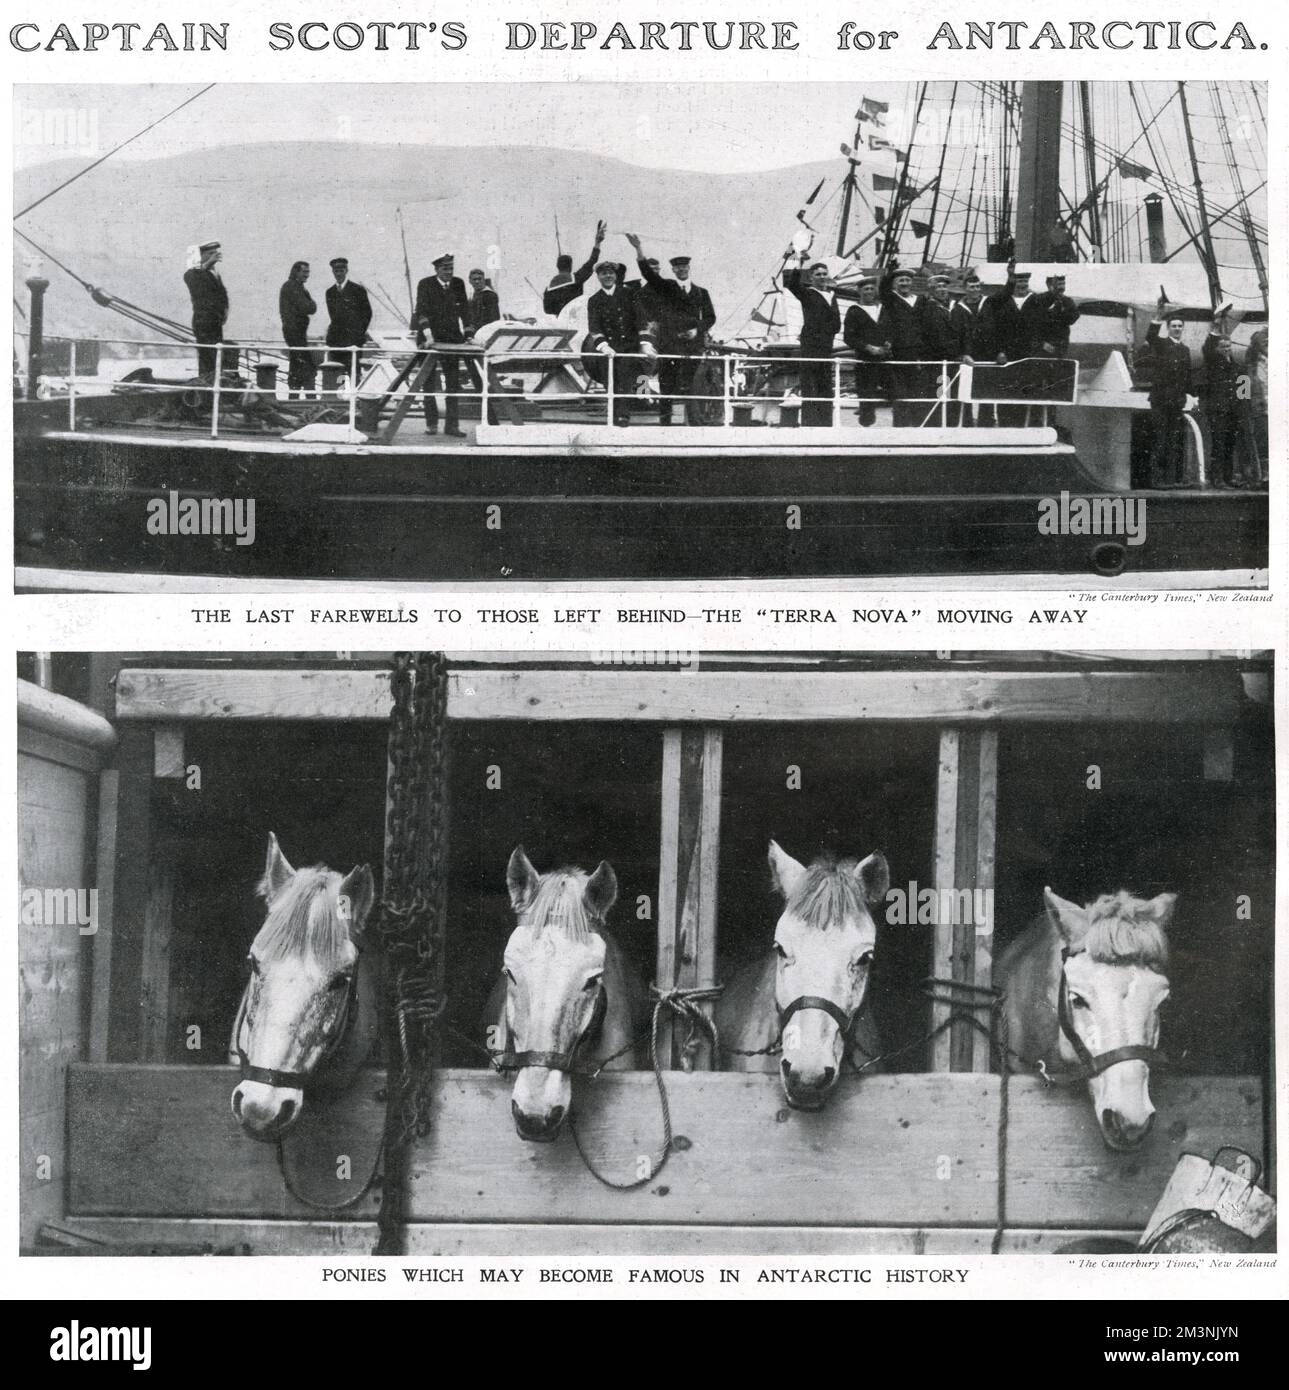 Zwei Fotos zeigen, dass Captain Scott und sein Team an Bord der Terra Nova nach Antarktis gegangen sind, wo sie versuchen würden, zuerst den Südpol zu erreichen. Das obere Bild zeigt, wie die Crew an Bord denen zuwinkt, die sie zurückgelassen haben. Das untere Bild zeigt die sibirischen Ponys, die Scott für den Transport von Vorräten mitgenommen hat. Scotts vorherrschender Einsatz von Ponys und Motorschlitten über Hunden (verwendet von dem erfolgreichen Norweger Amundsen) wird als einer der Gründe angeführt, warum Scott bei seinem Versuch, zuerst den Südpol zu erreichen, gescheitert ist. Datum: 1911 Stockfoto